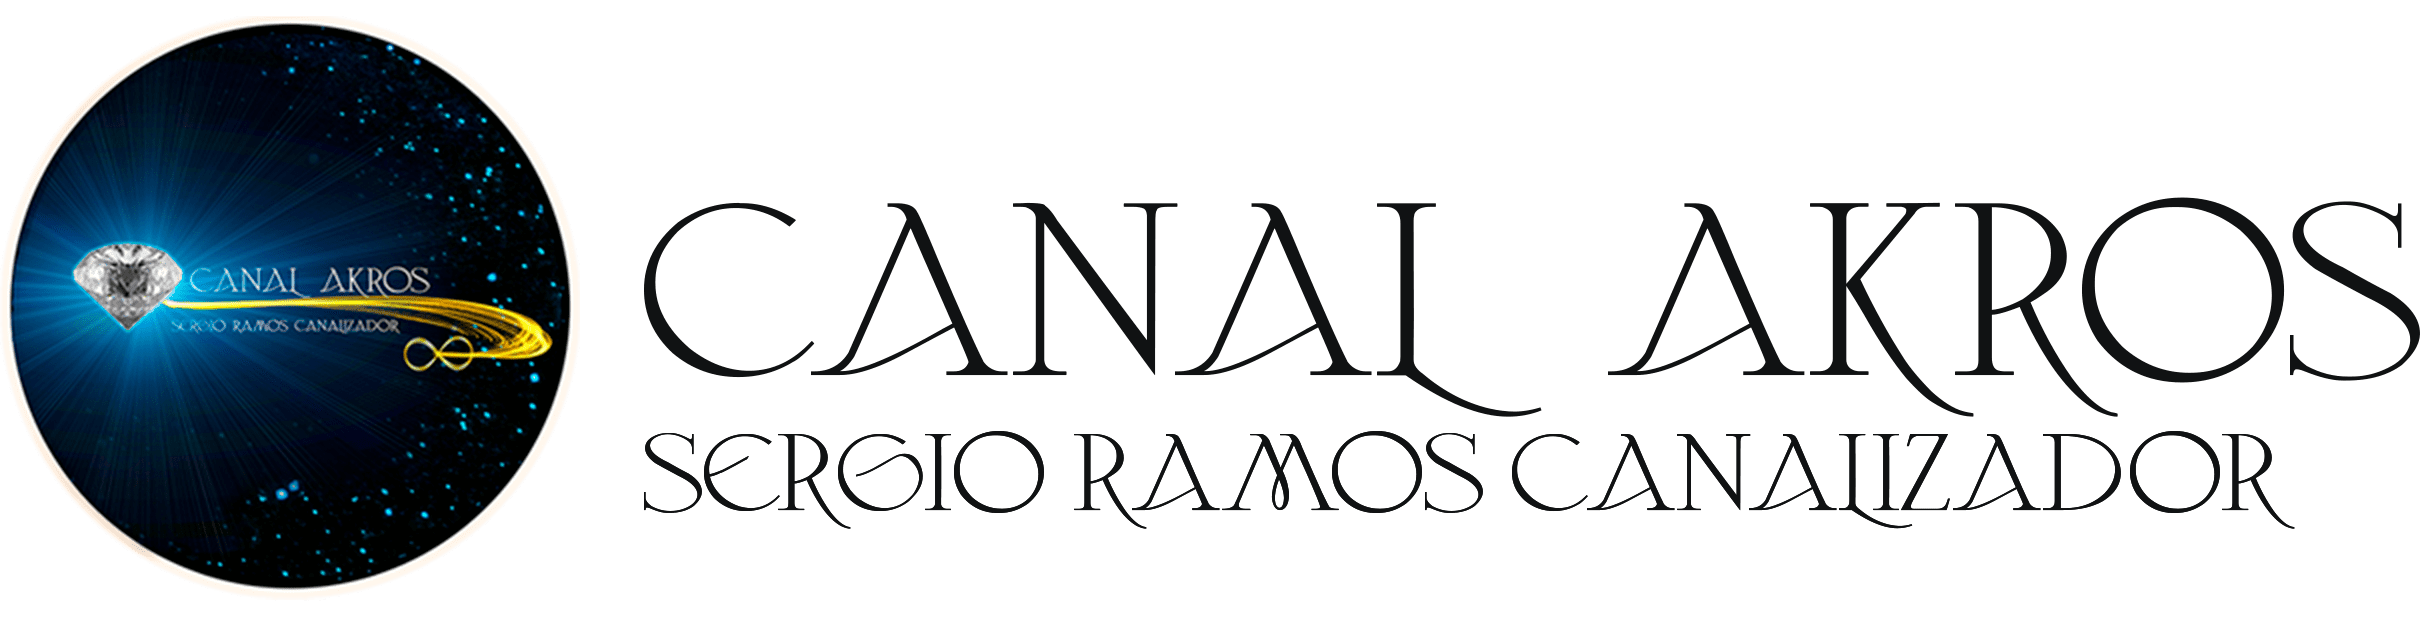 Canal Akros: Sergio Ramos Canalizador